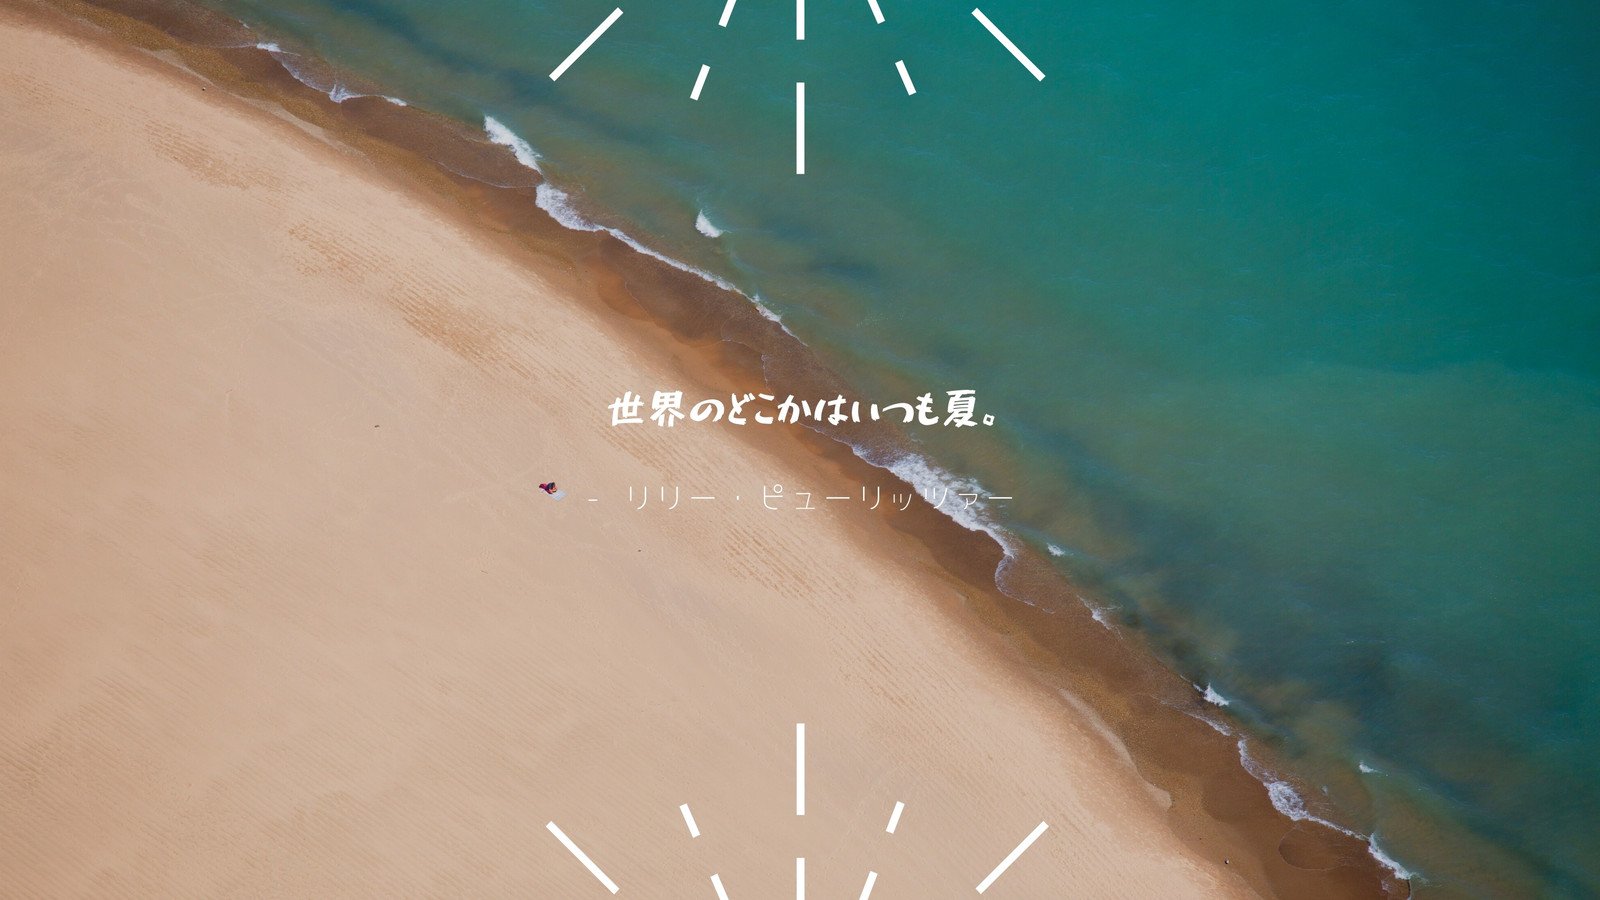 ビーチのデスクトップ壁紙テンプレートでおしゃれな海や夏の背景画像デザインを無料で作成 Canva